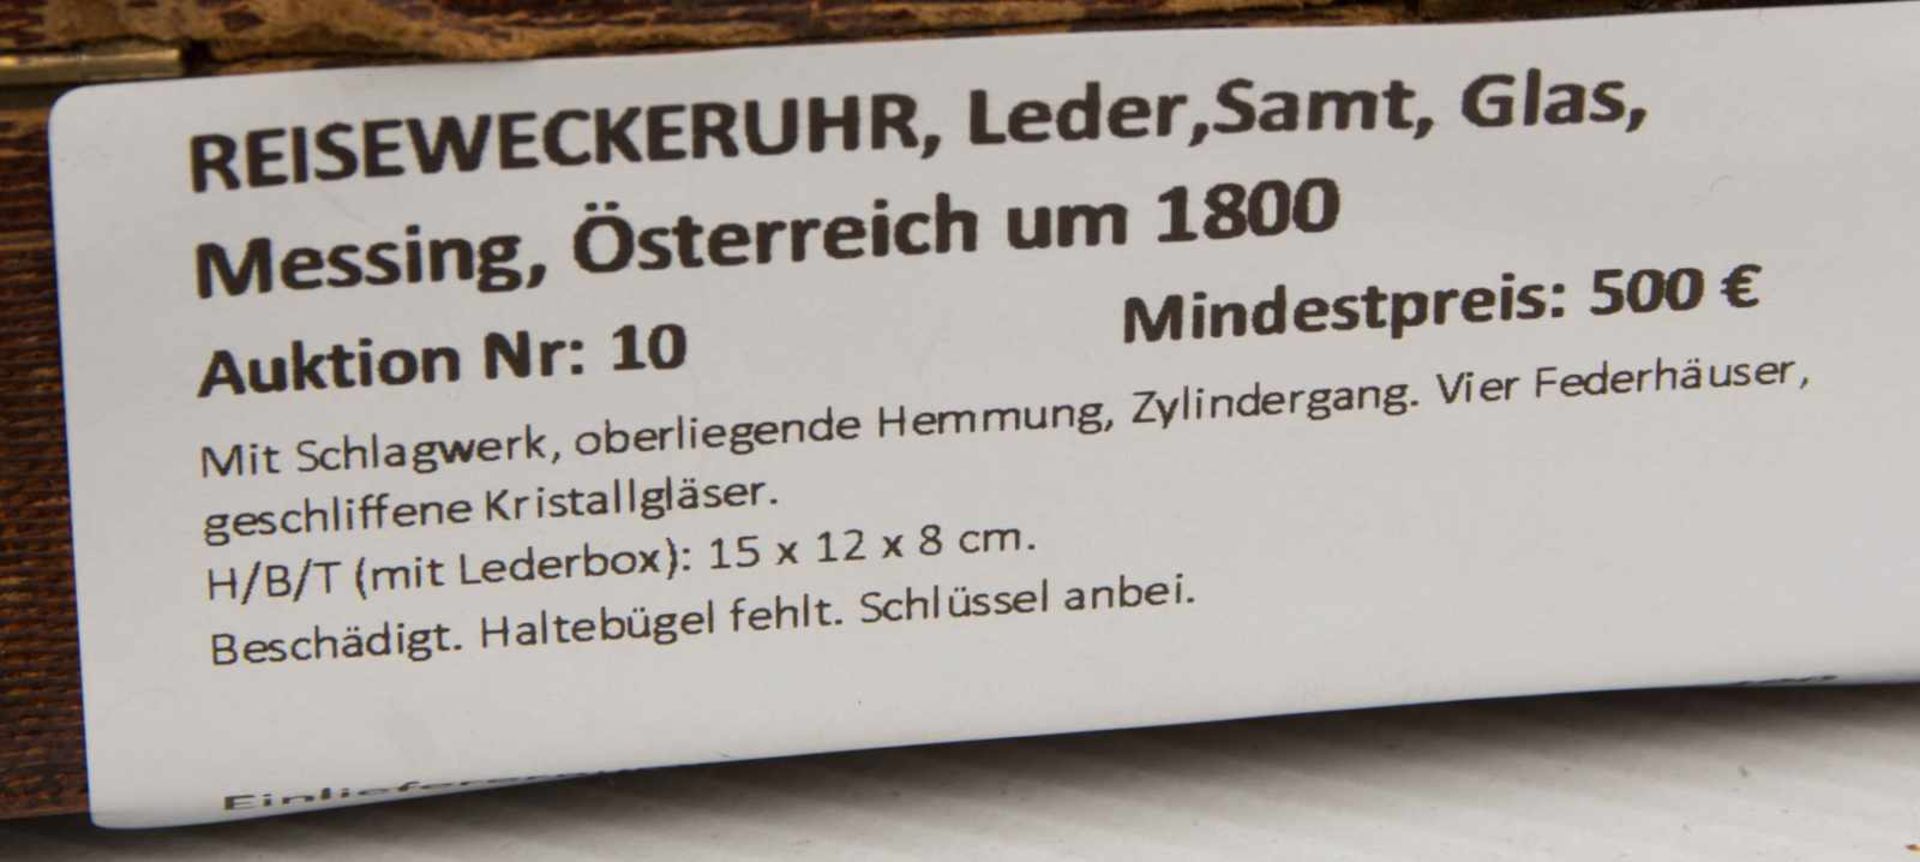 REISEWECKERUHR, Leder,Samt, Glas, Messing, Österreich um 1800Mit Schlagwerk, oberliegende Hemmung, - Image 9 of 11